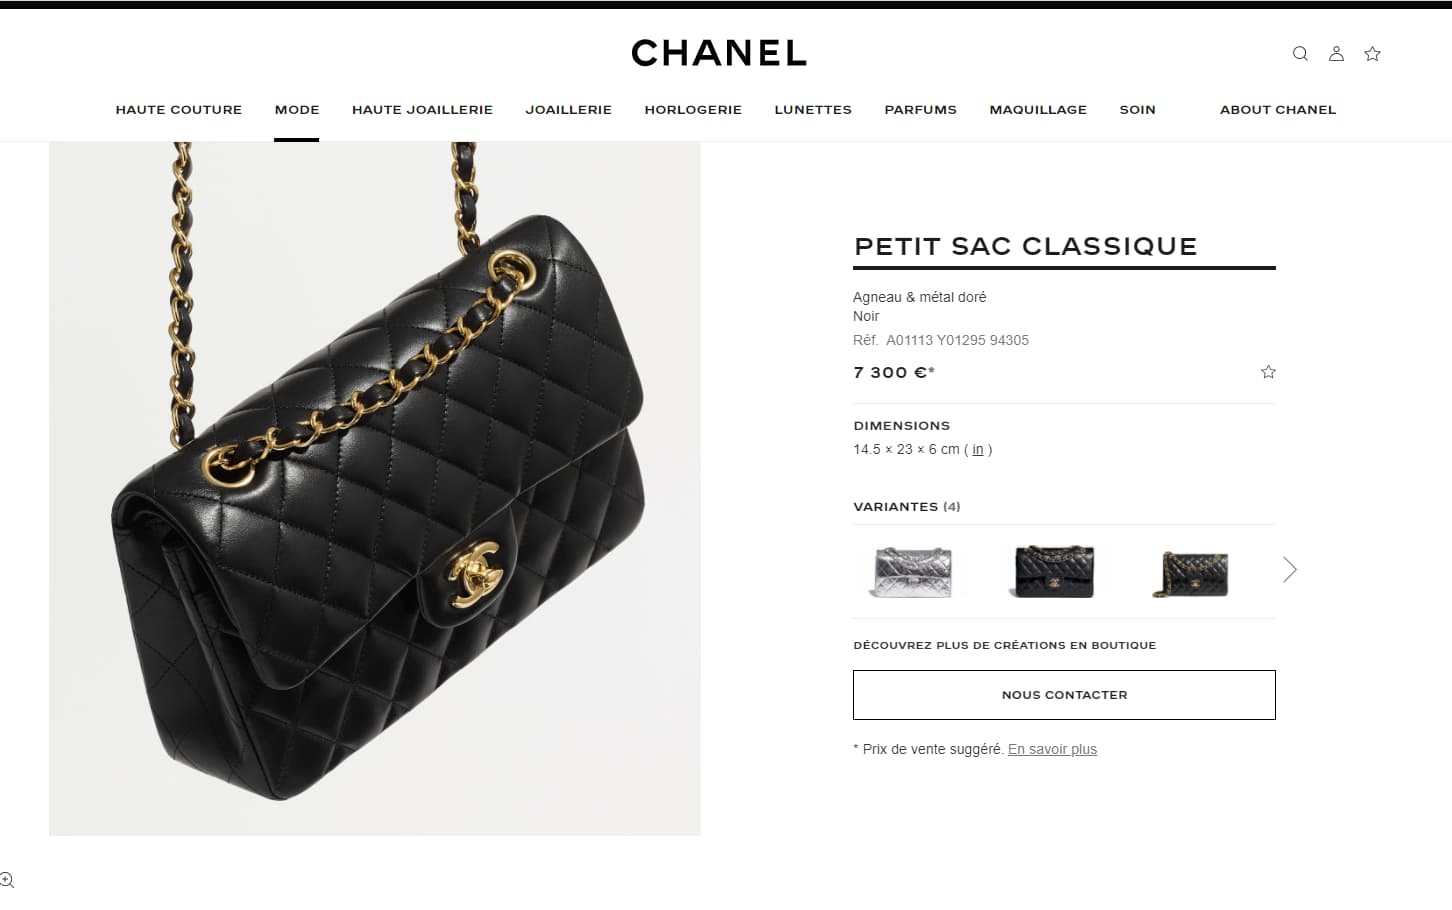 Pourquoi Chanel augmenté le prix d'un sac de près de 2000 euros en seulement quelques mois